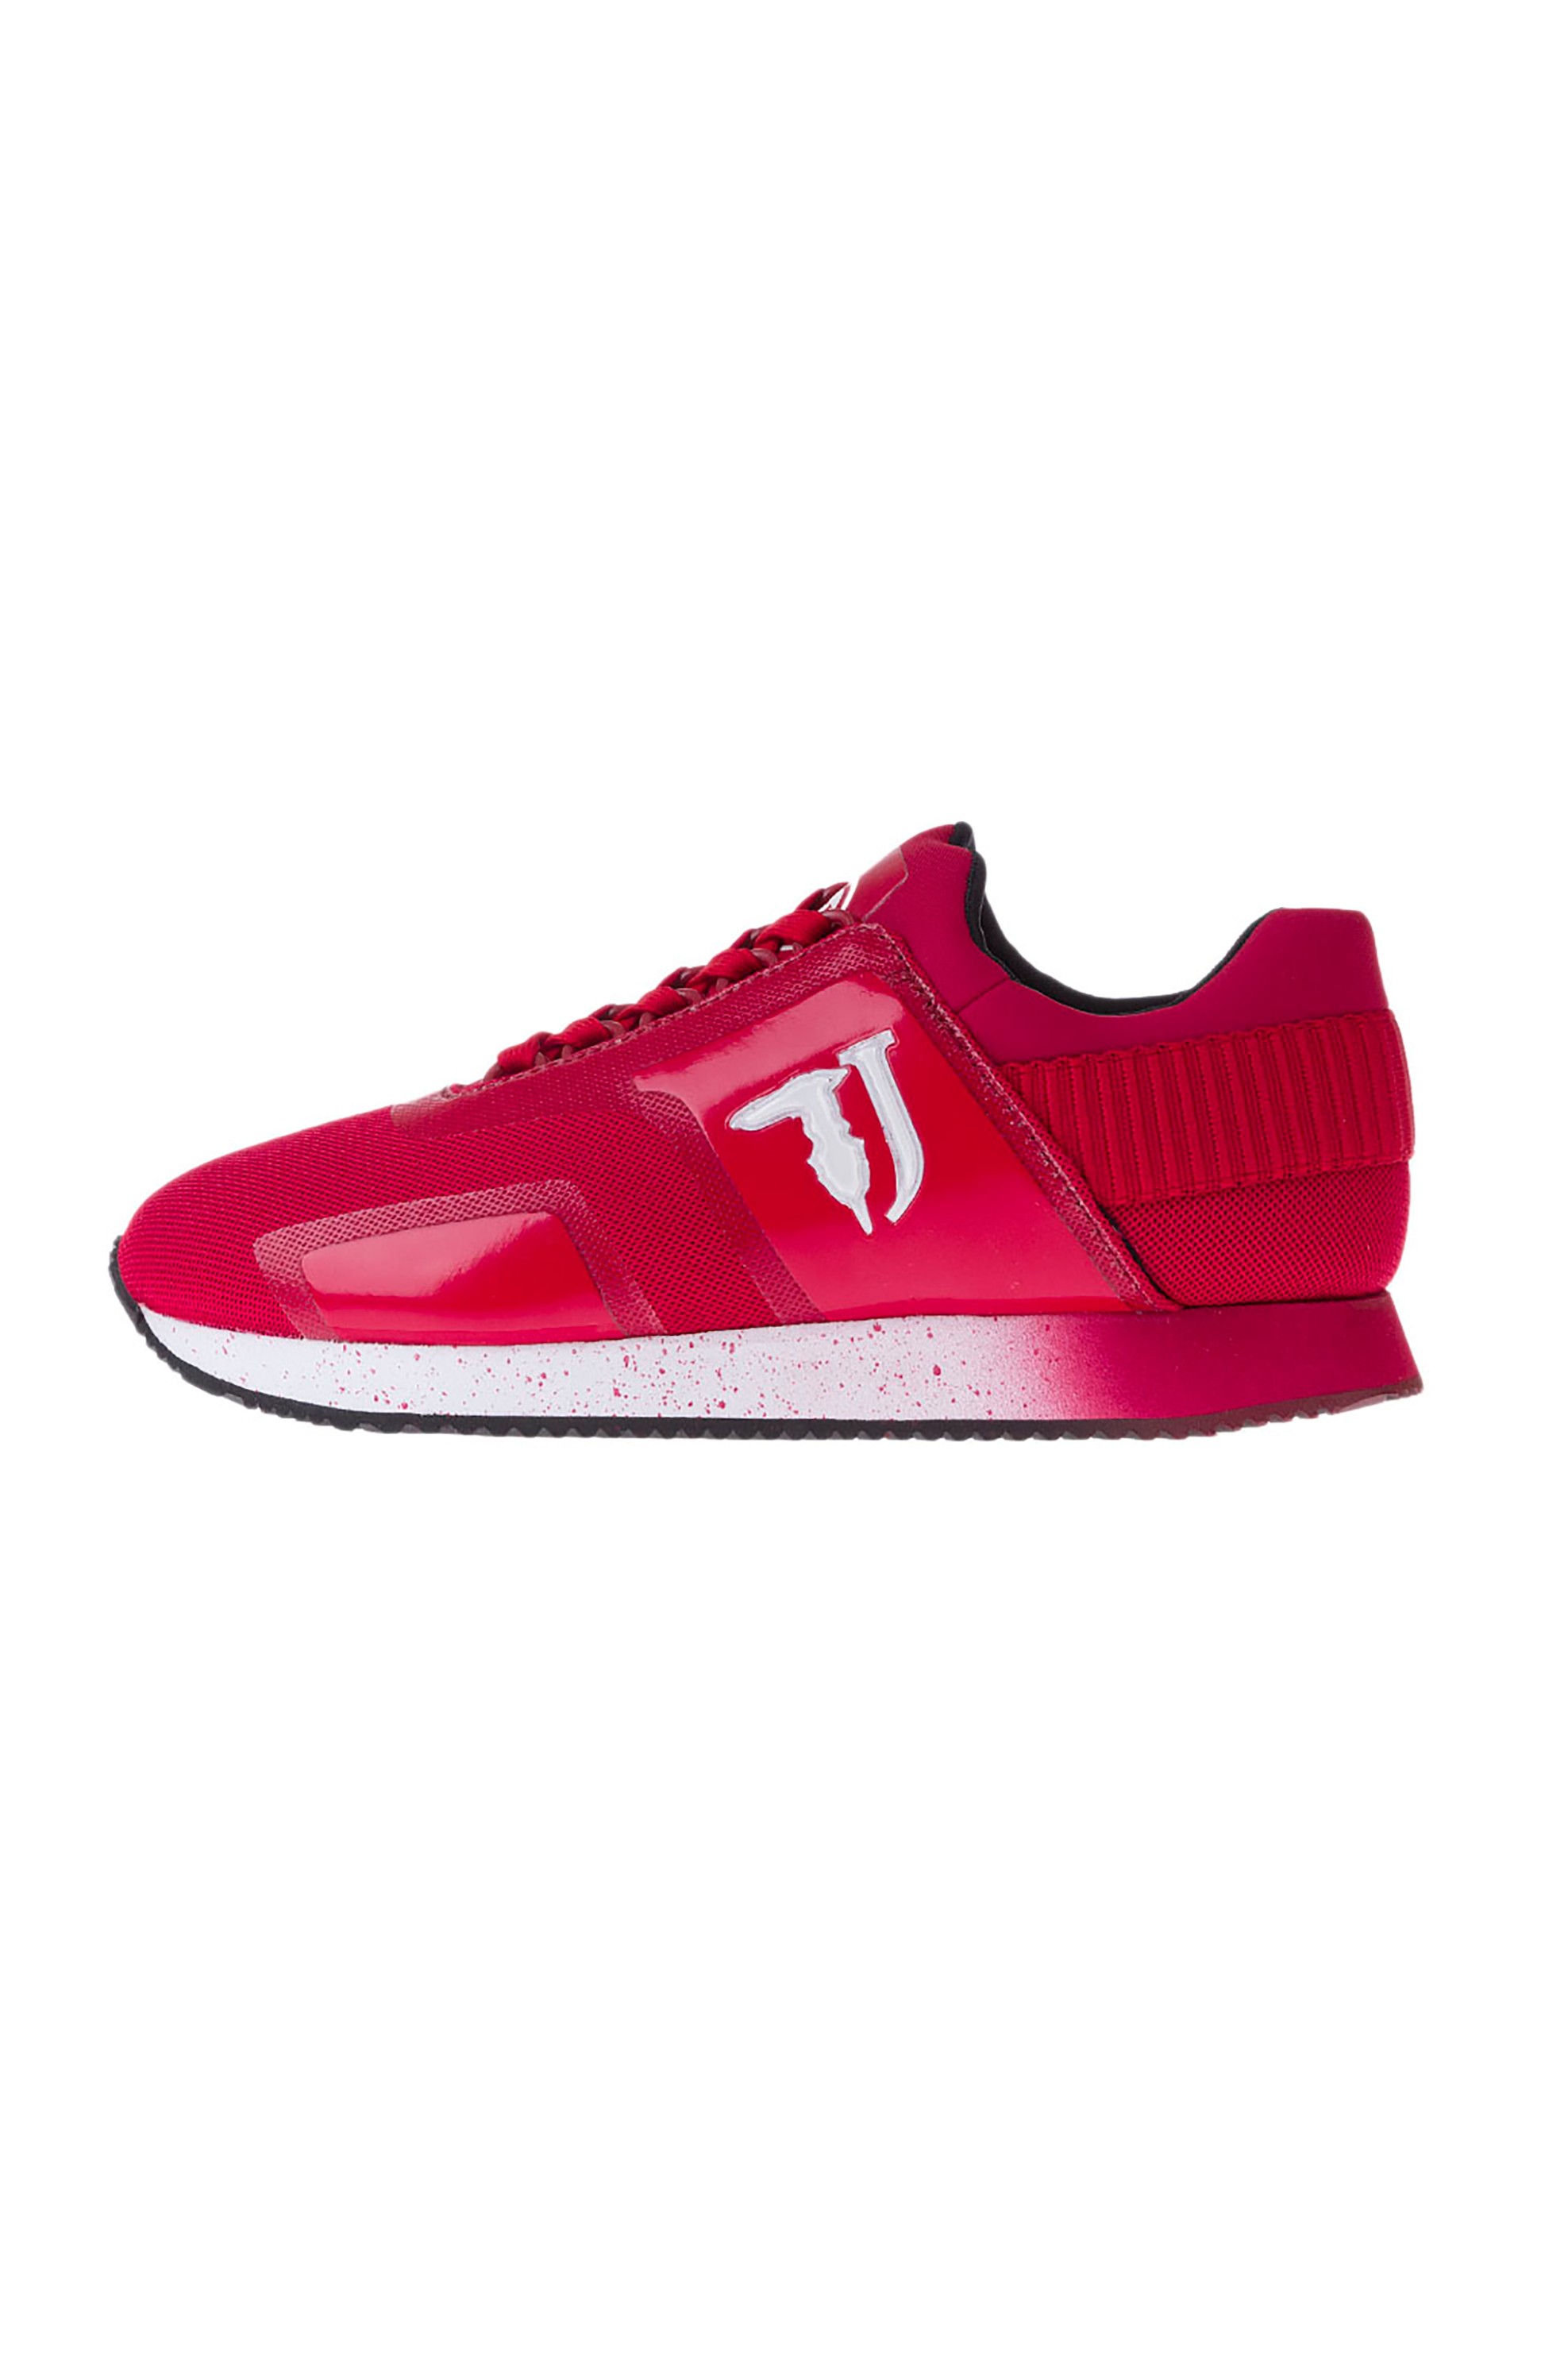 Άνδρας > ΠΑΠΟΥΤΣΙΑ > Trainers & Sneakers Trussardi Jeans ανδρικά sneakers με δερμάτινες και mesh λεπτομέρειες - 77A00154-9Y099999 Κόκκινο